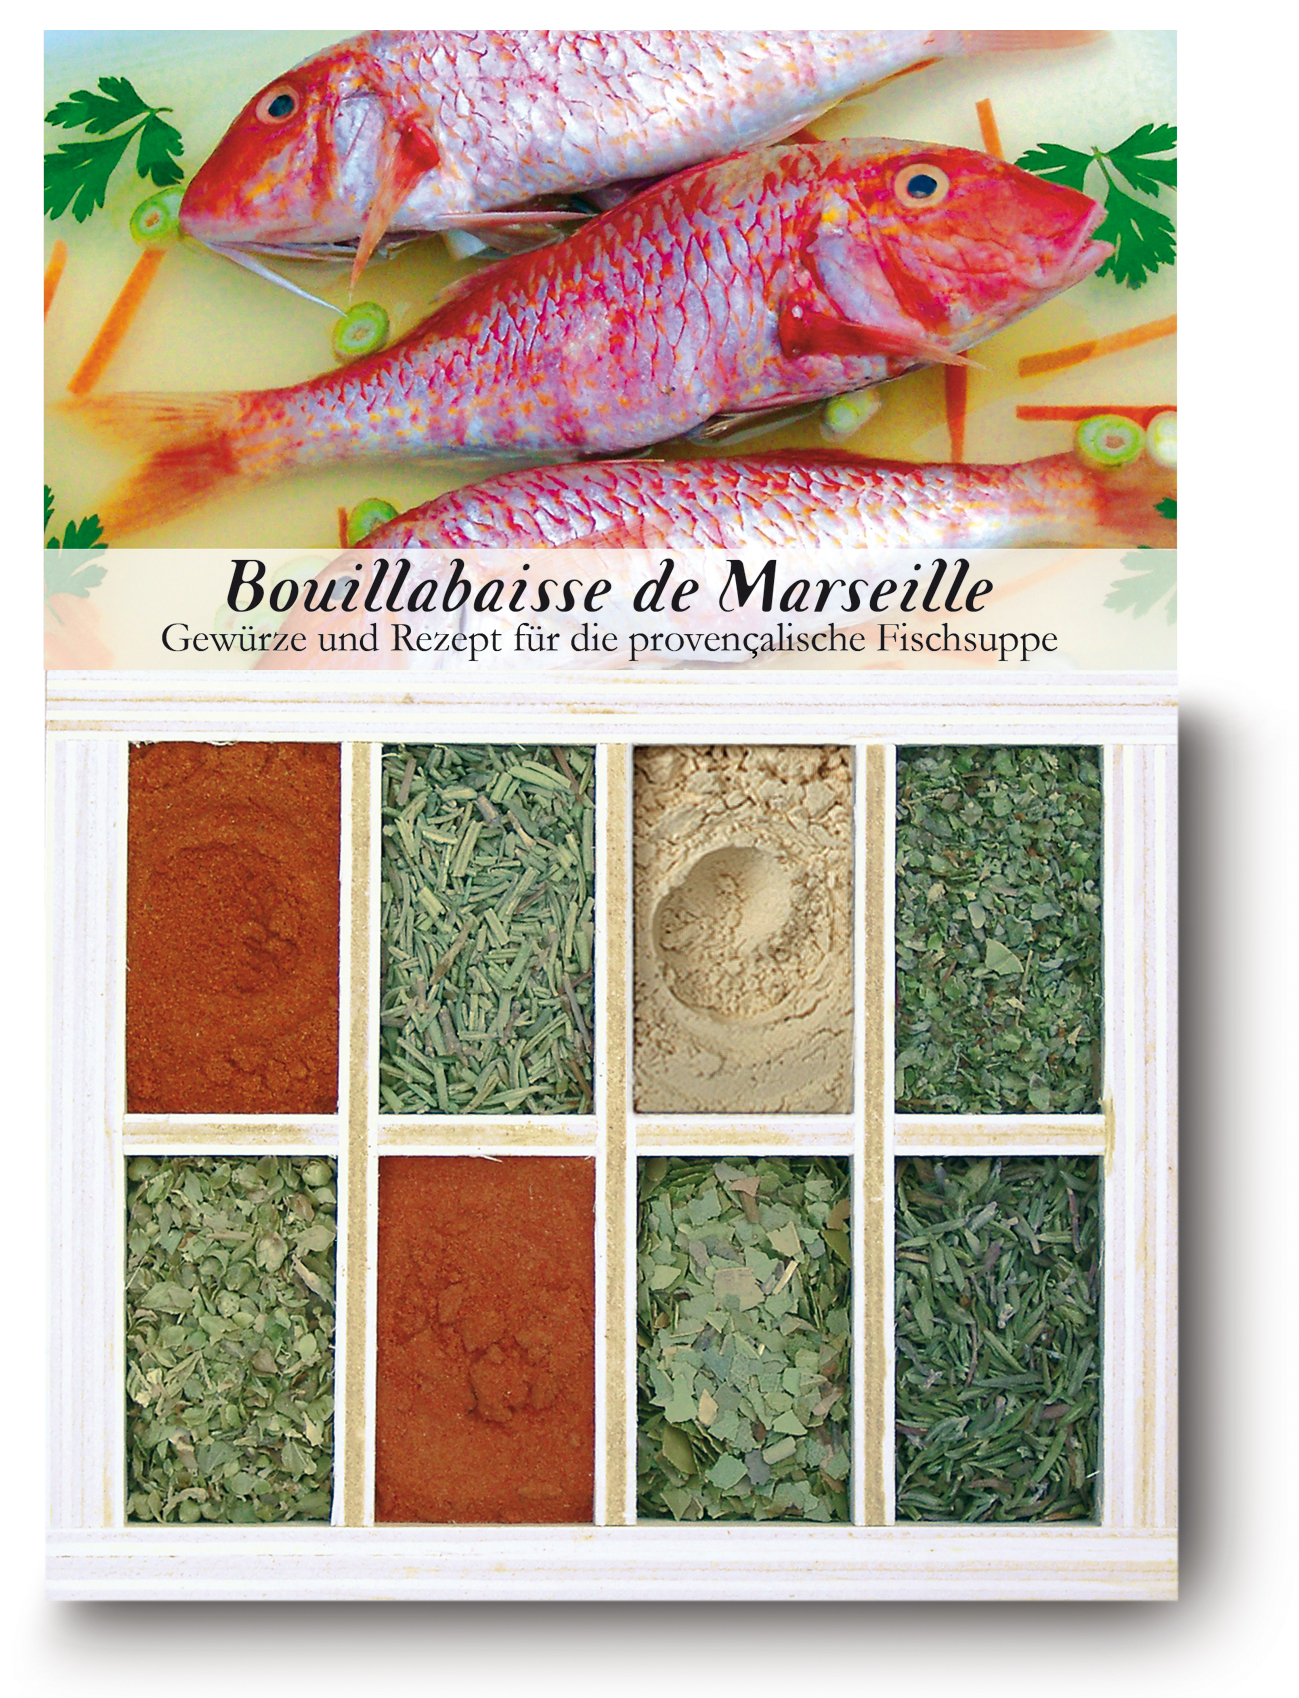 Bouillabaisse de Marseille-Gewürzkasten